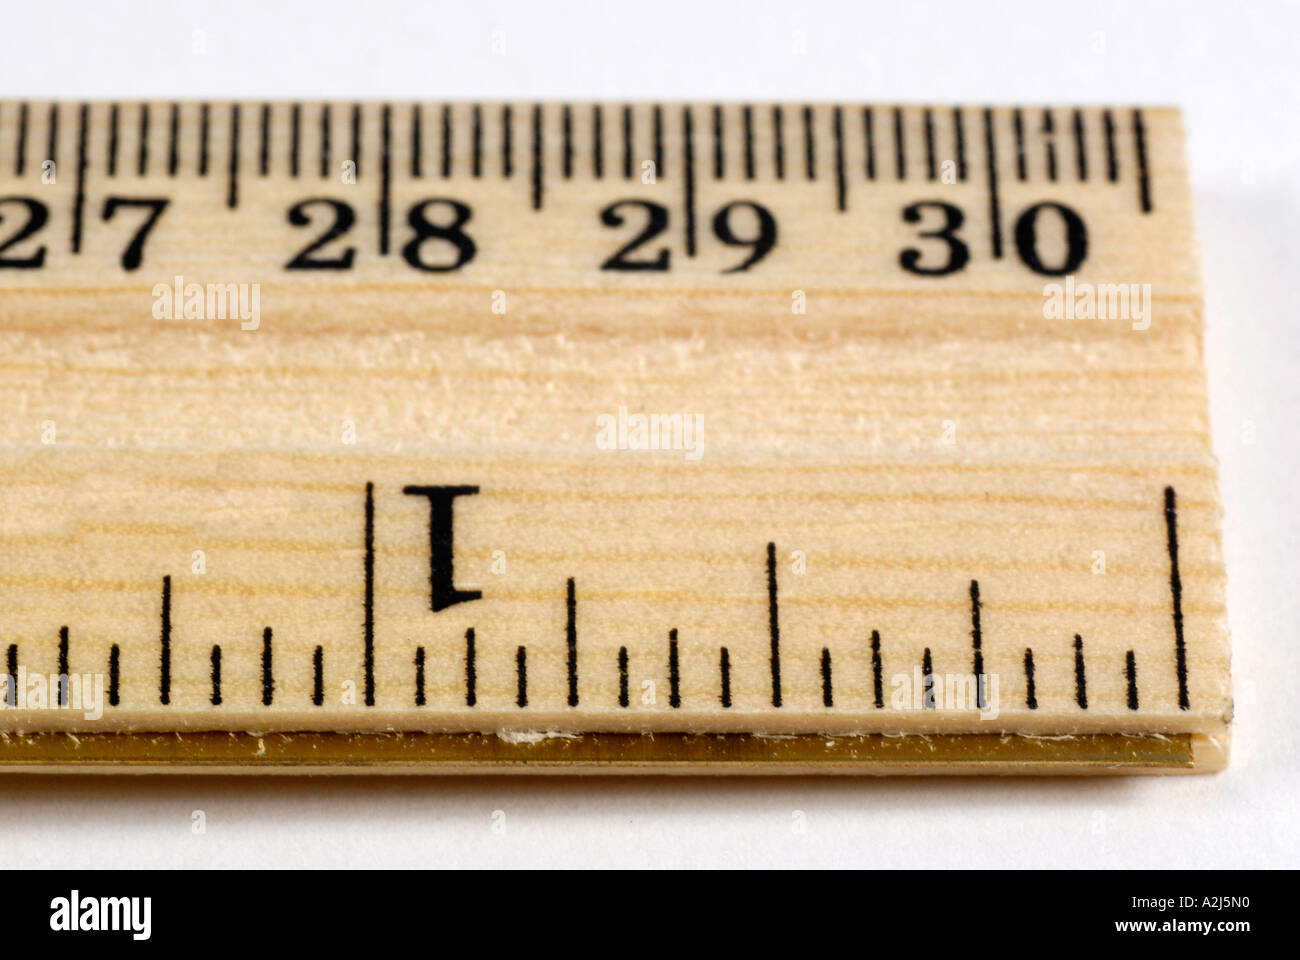 Règle en bois est un appareil de mesure en pouces et centimètres Banque D'Images